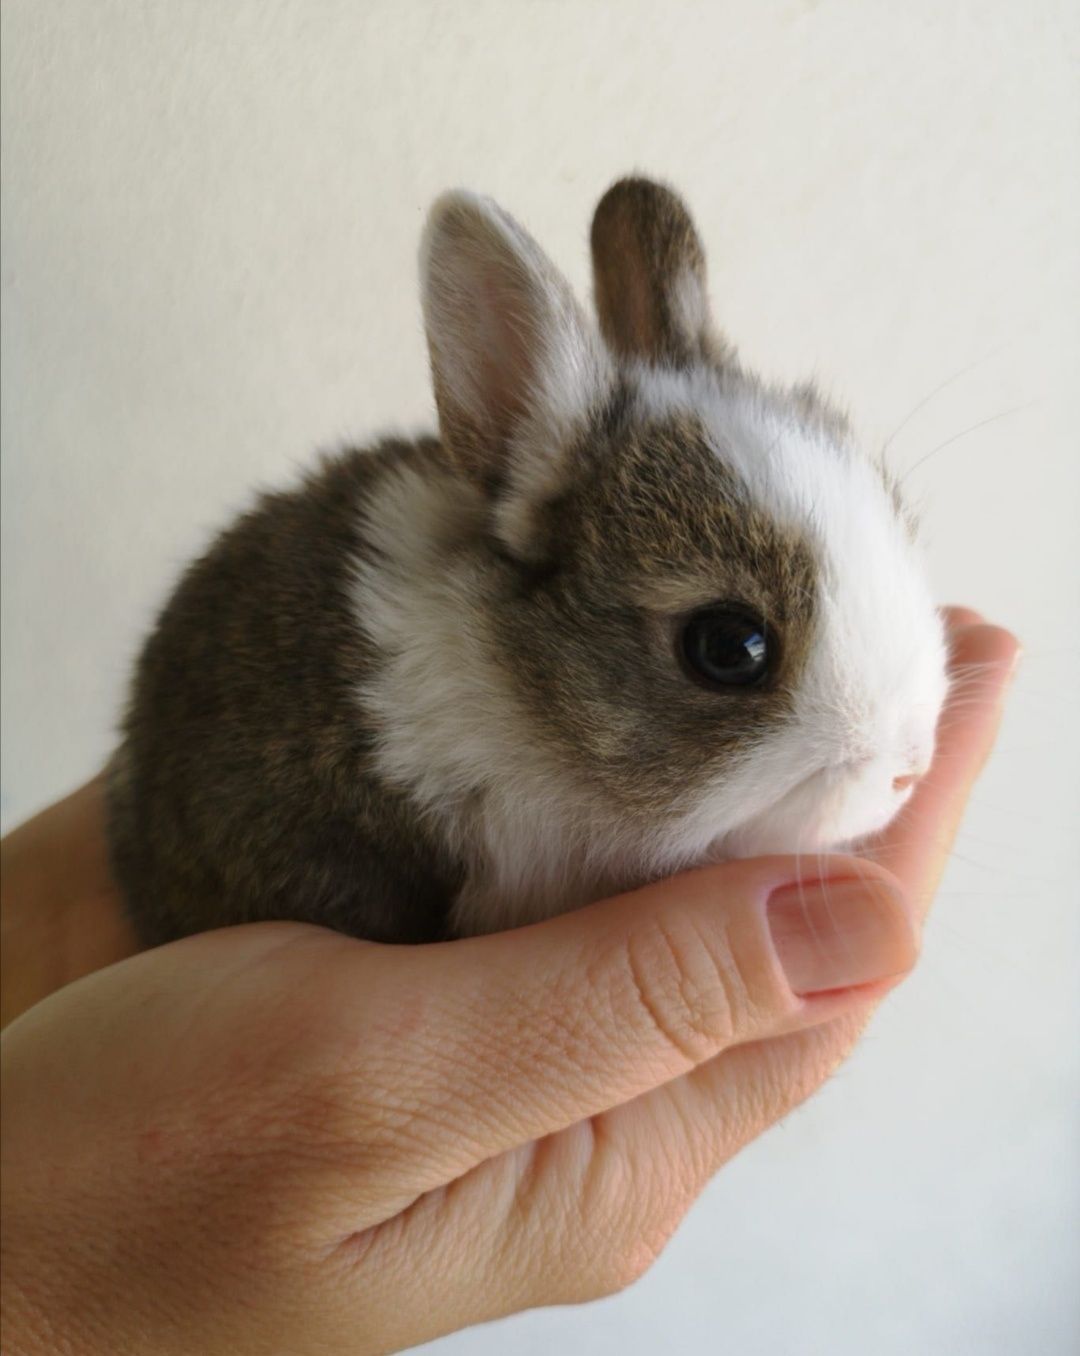 KIT completo coelhos anões angorá, holandês mini e minitoy muito fofos